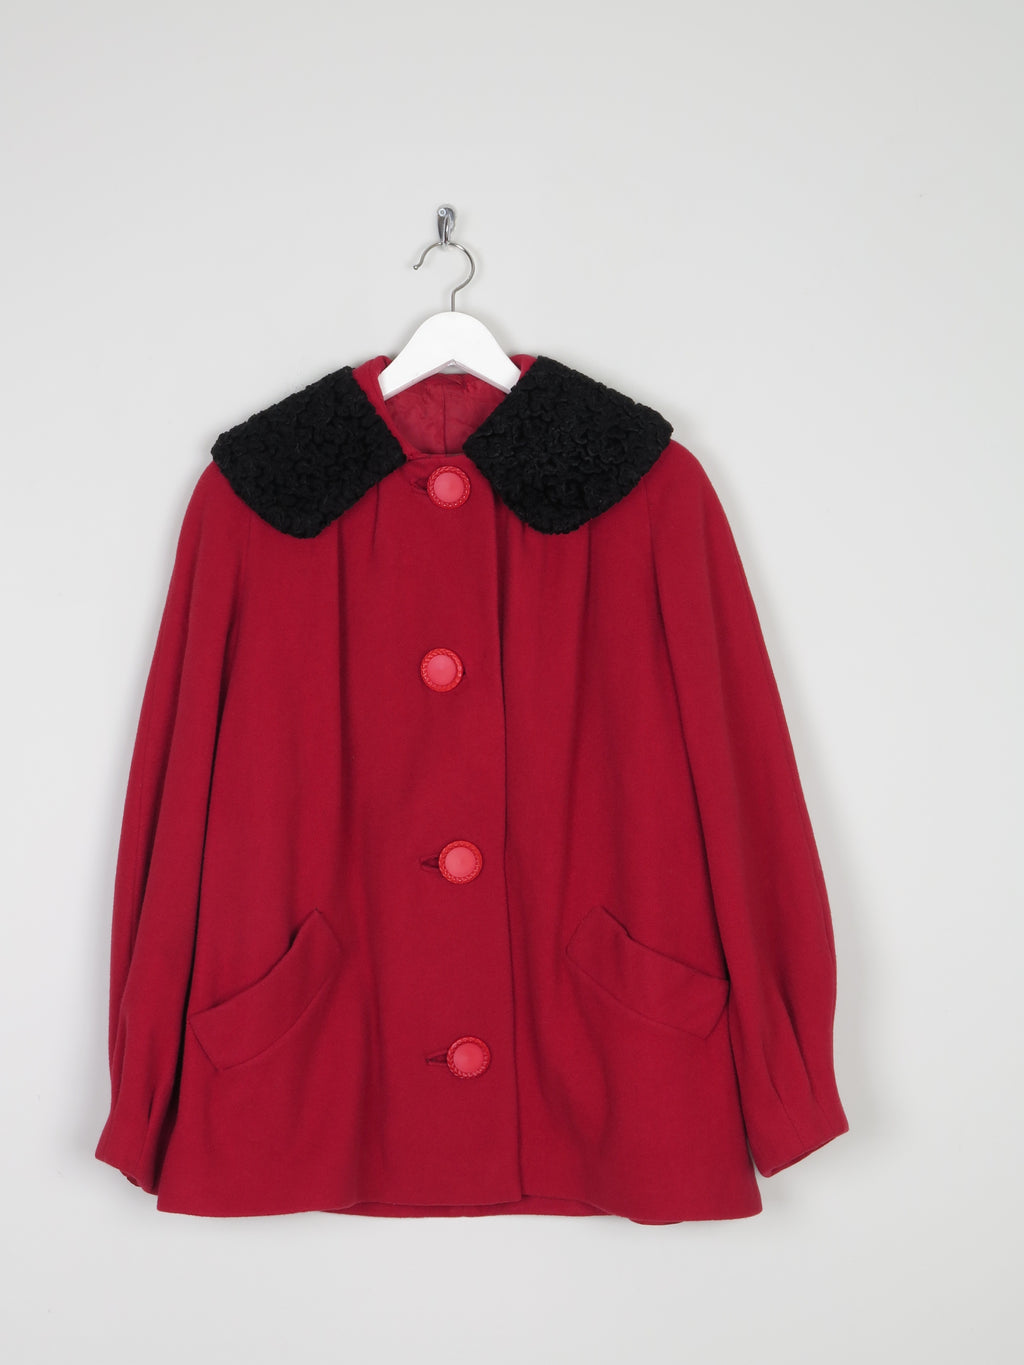 Women's 1950s Red Wool Jacket S/M/L